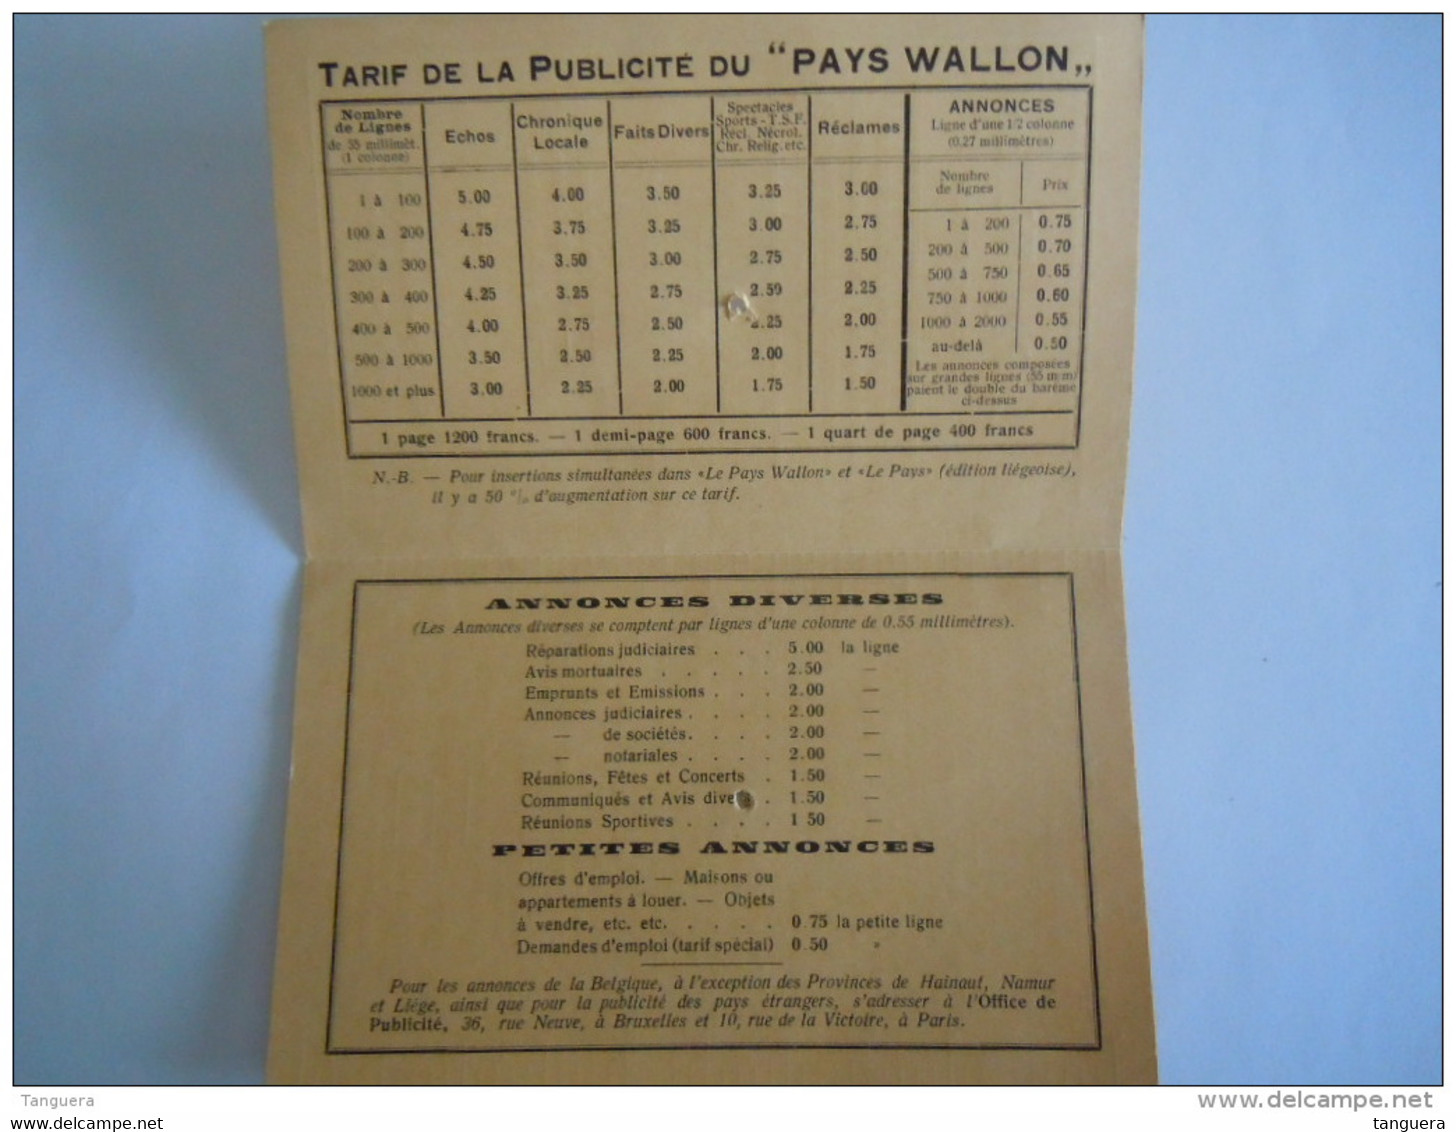 1927 Le Pas Wallon Journal Quotidien Tarif Des Annonces Et Réclames Bureaux: Charleroi Form 9,5 X 15,3 Cm - Printing & Stationeries